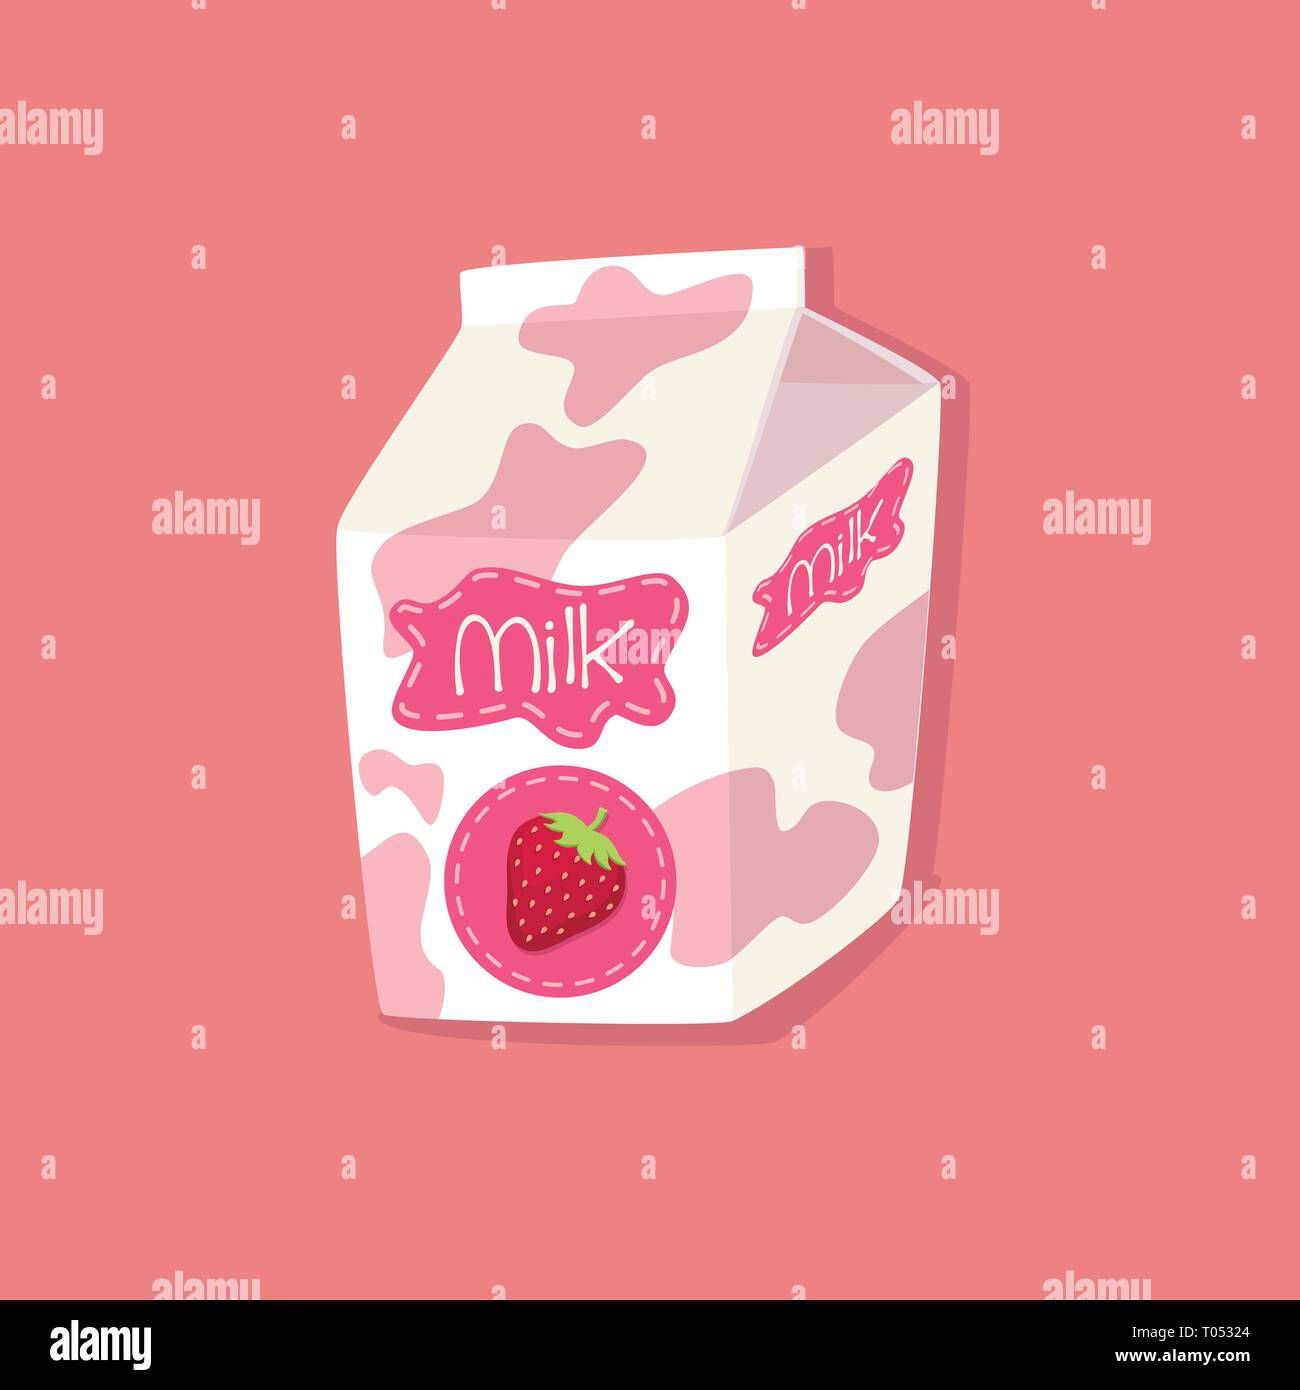 Milch Verpackung Karton Strawberry Flavoured auf rosa Hintergrund Vektor-illustration beschmutzt Stock Vektor